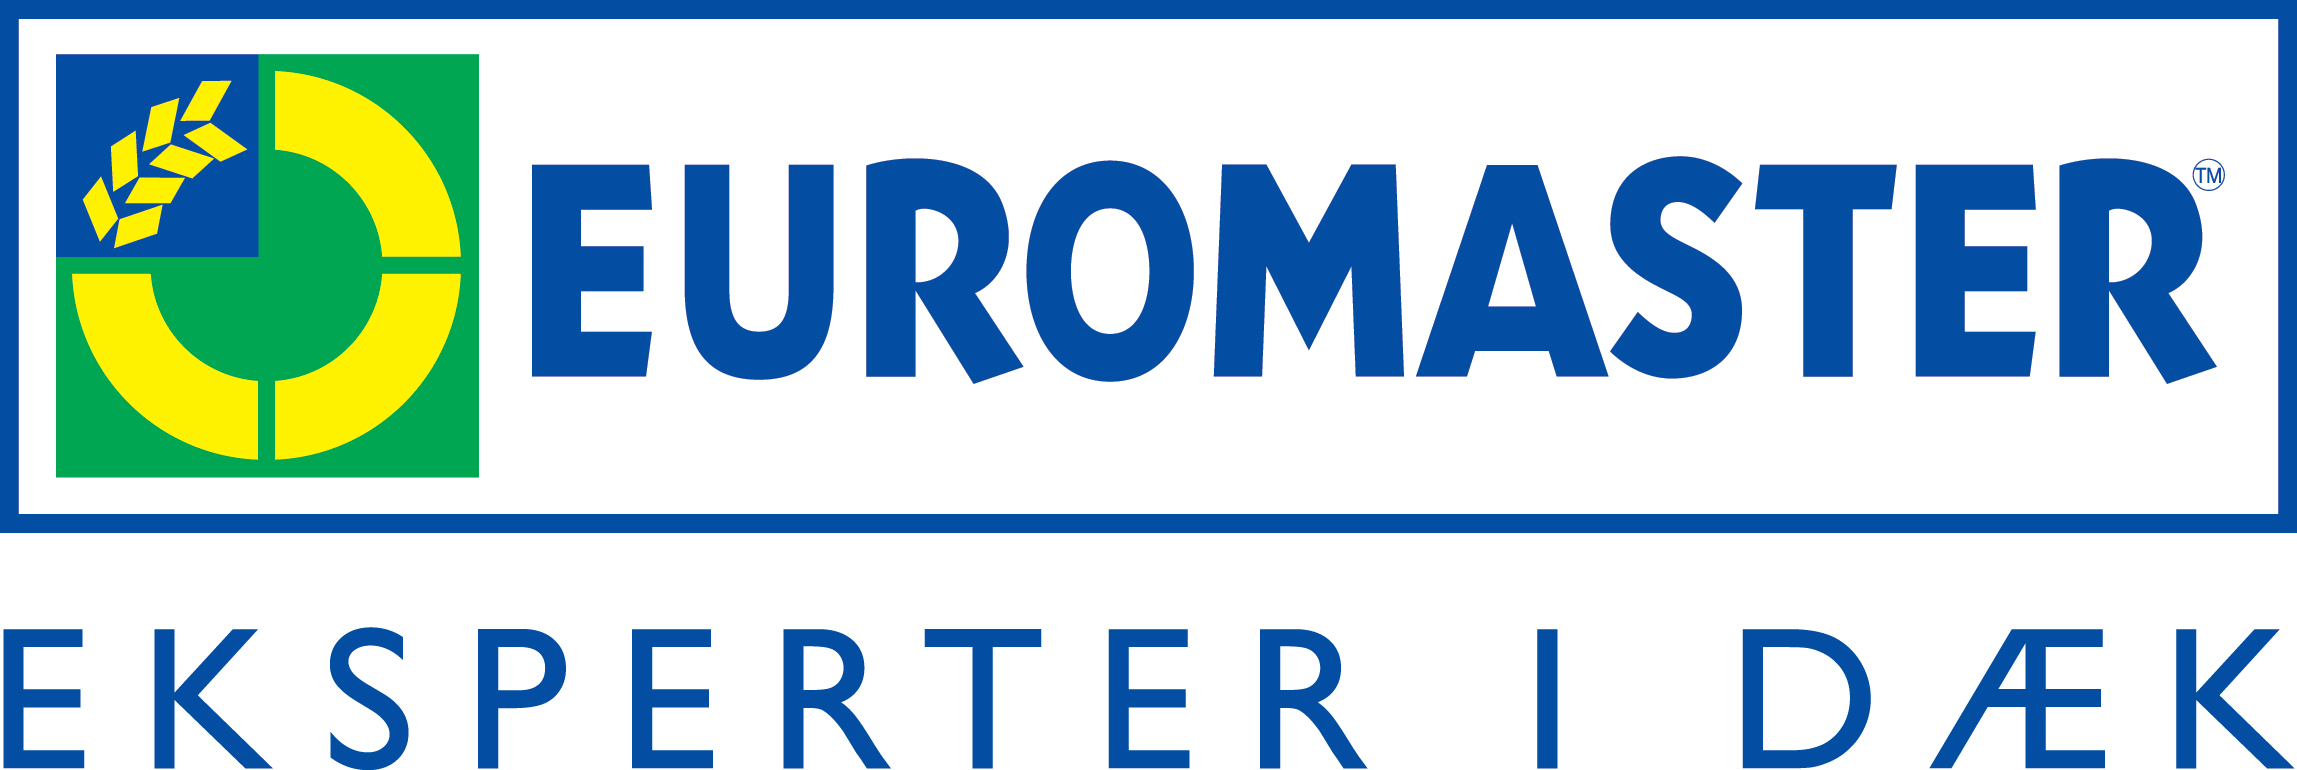 Euromaster Esbjerg logo